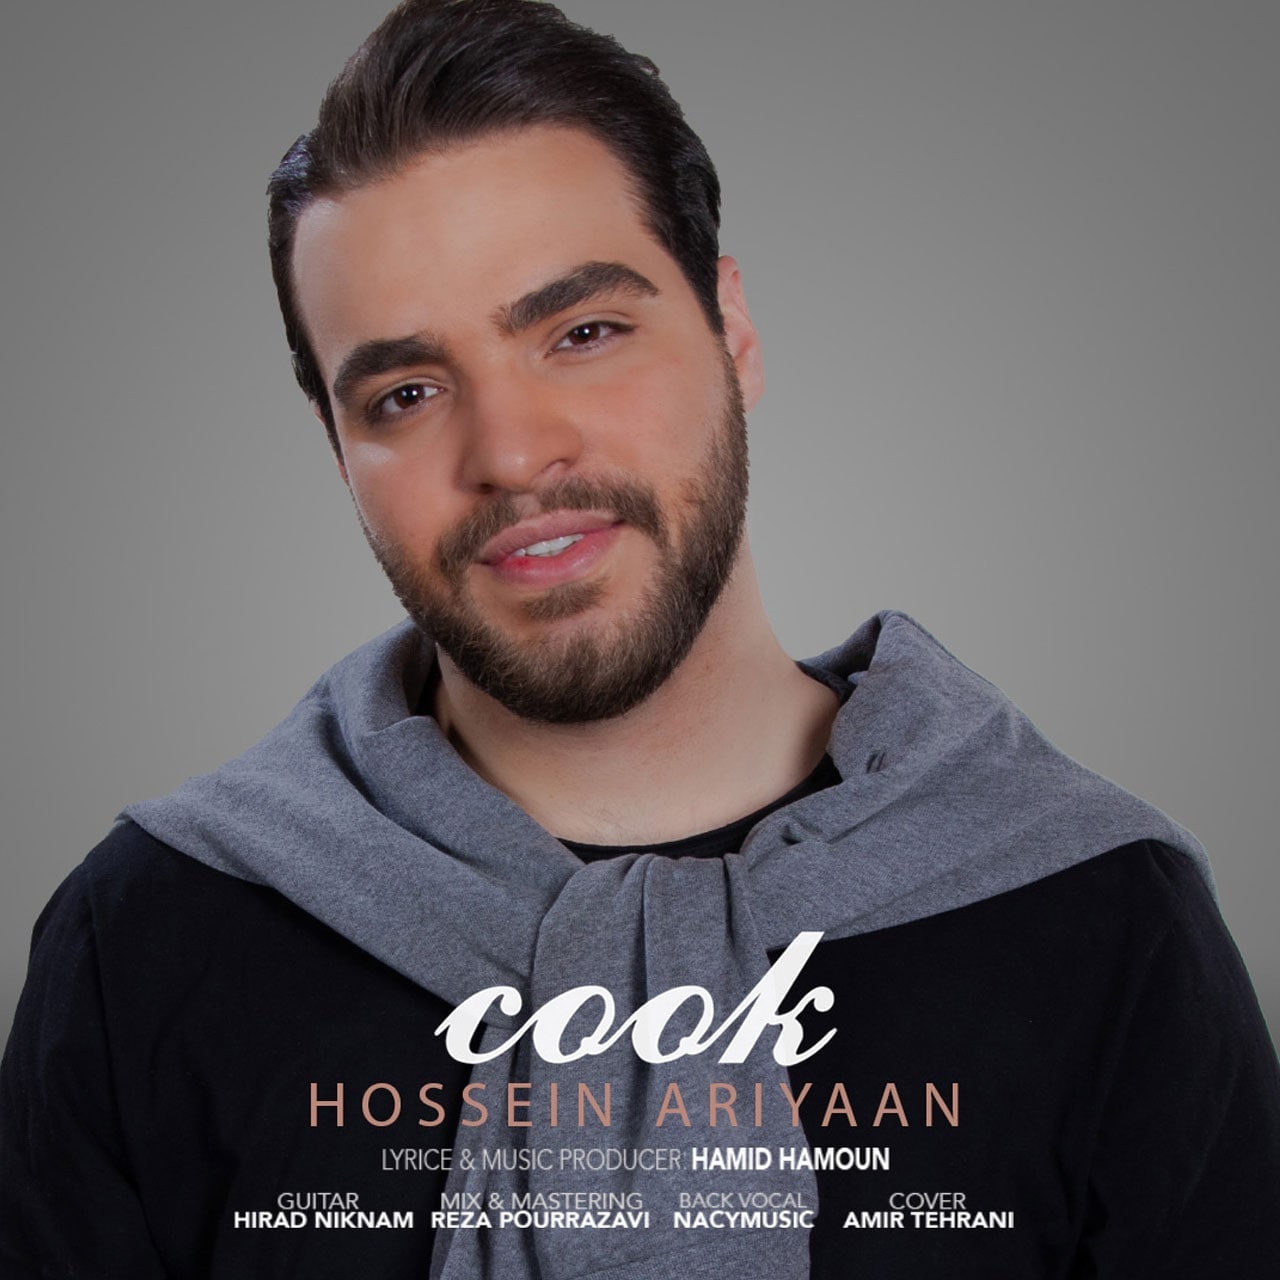 Hossein Ariyaan – Cook